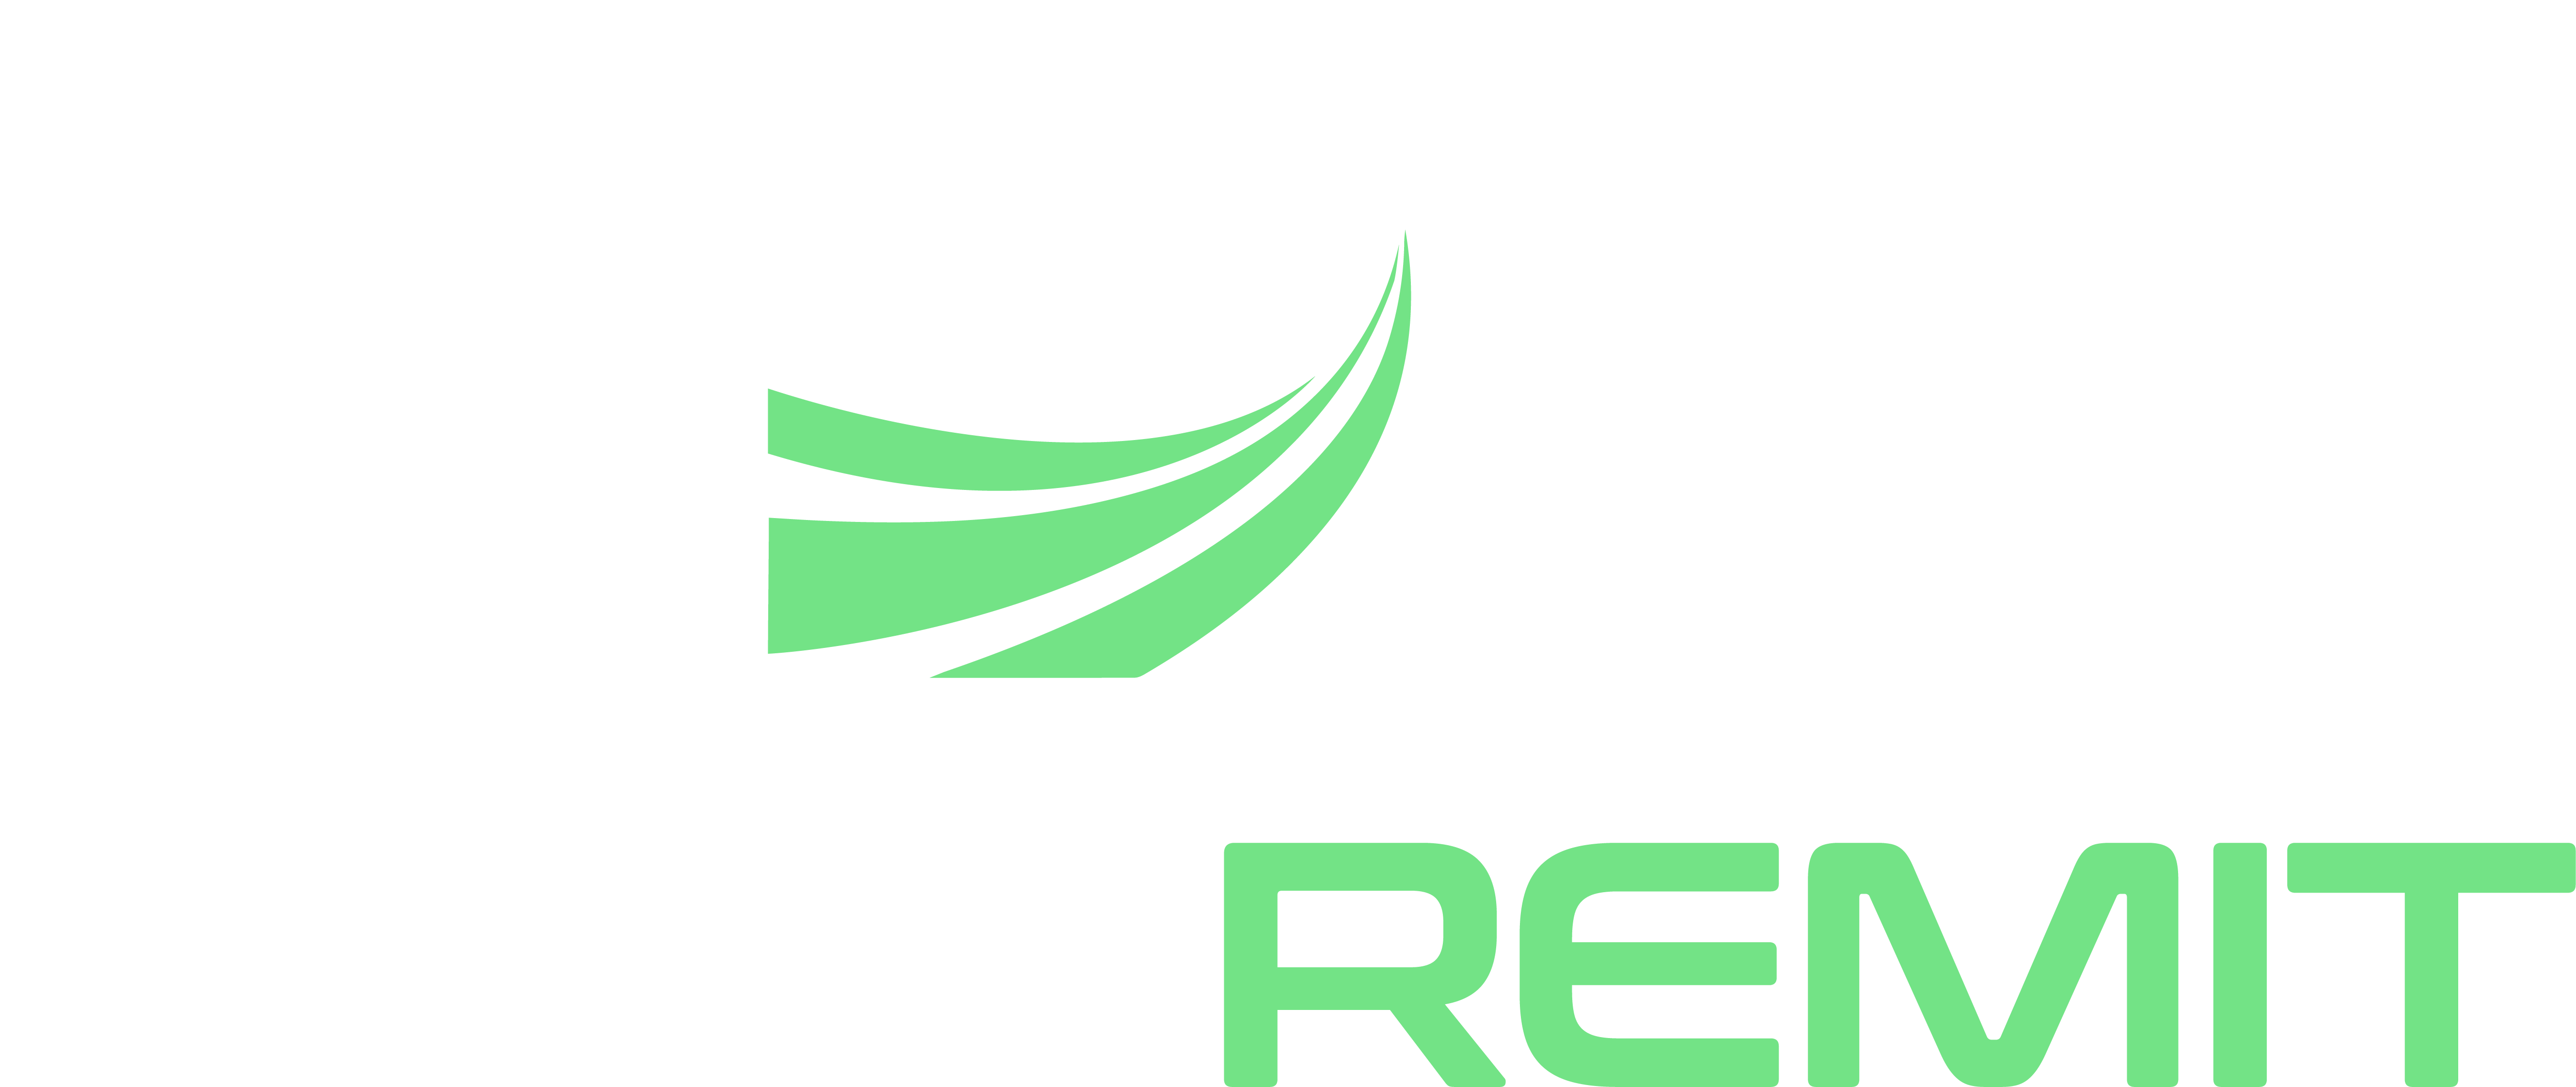 Best Remit Logo